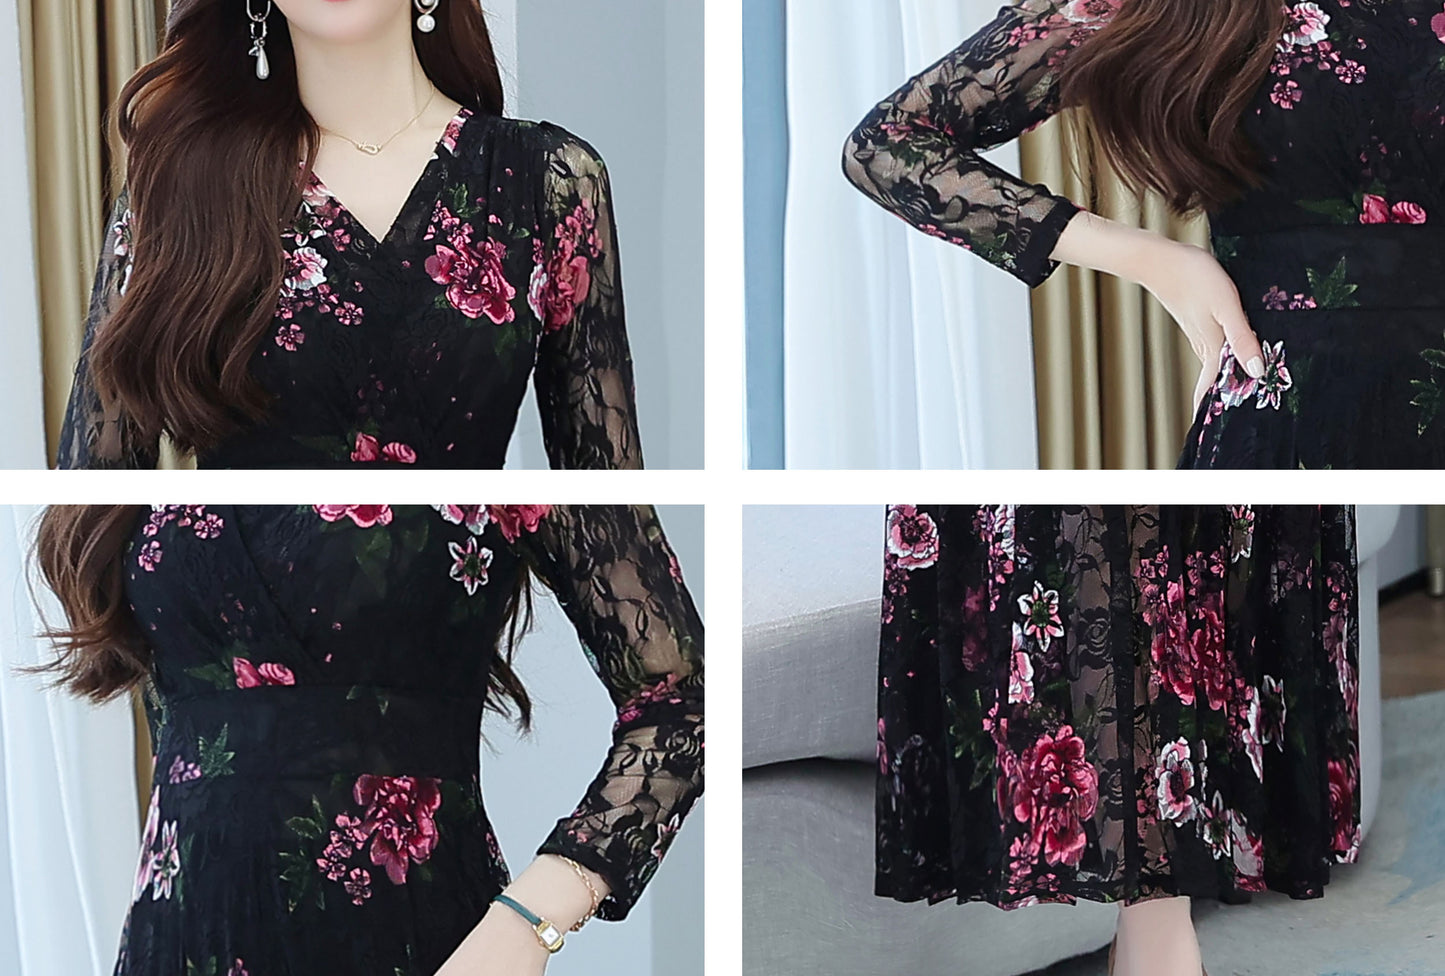 Black V neckline Floral Embroidery Dress